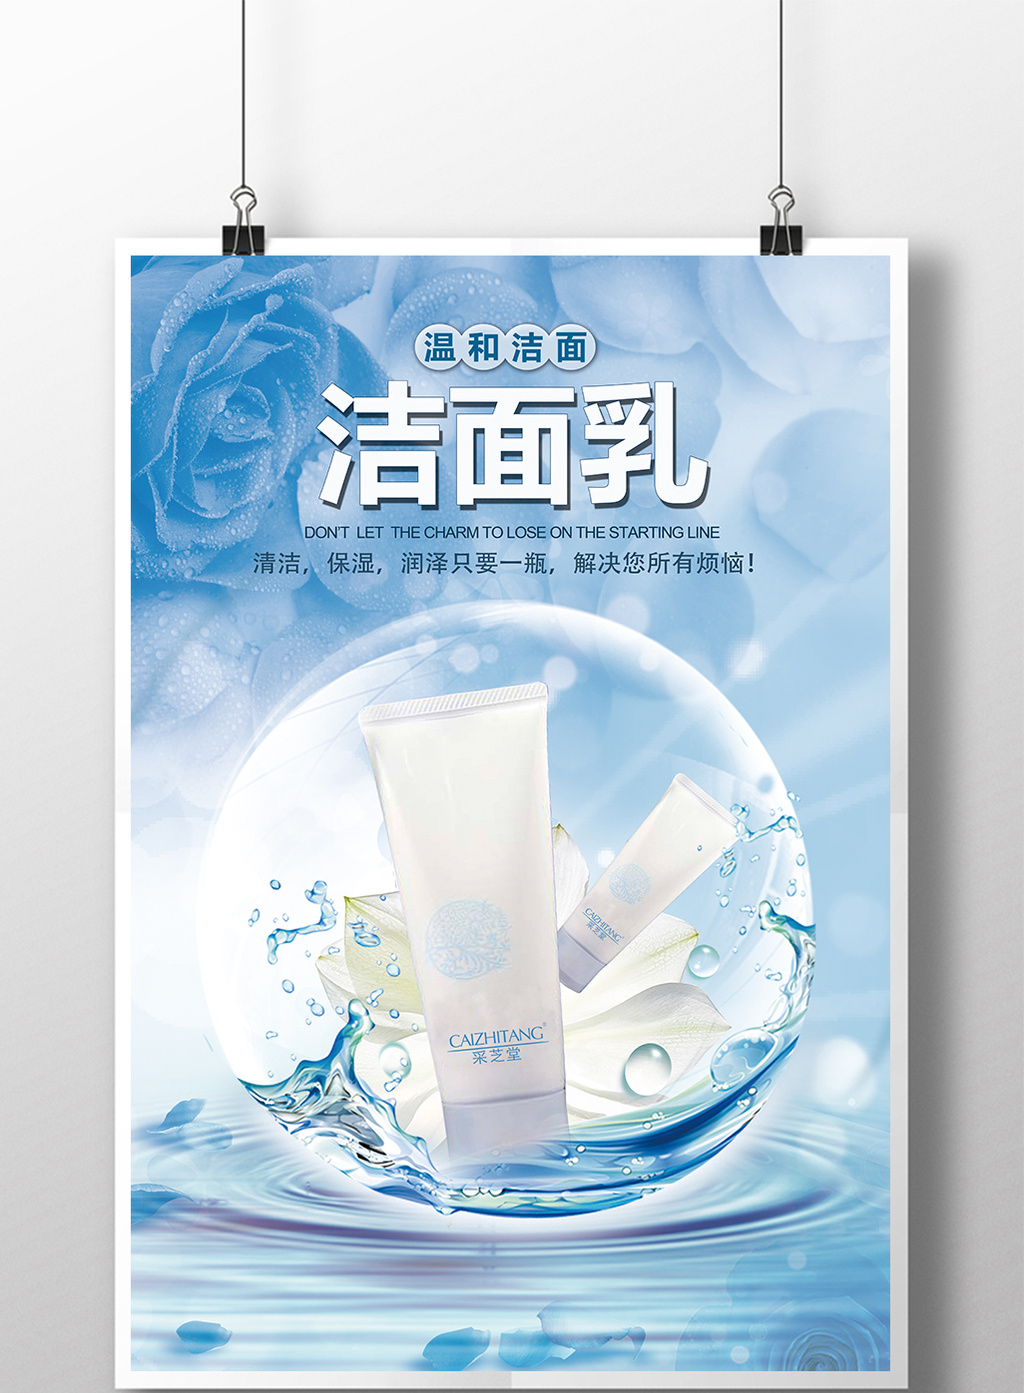 包图网提供精美好看的洁面乳创意海报(洗面奶)素材免费下载,本次作品